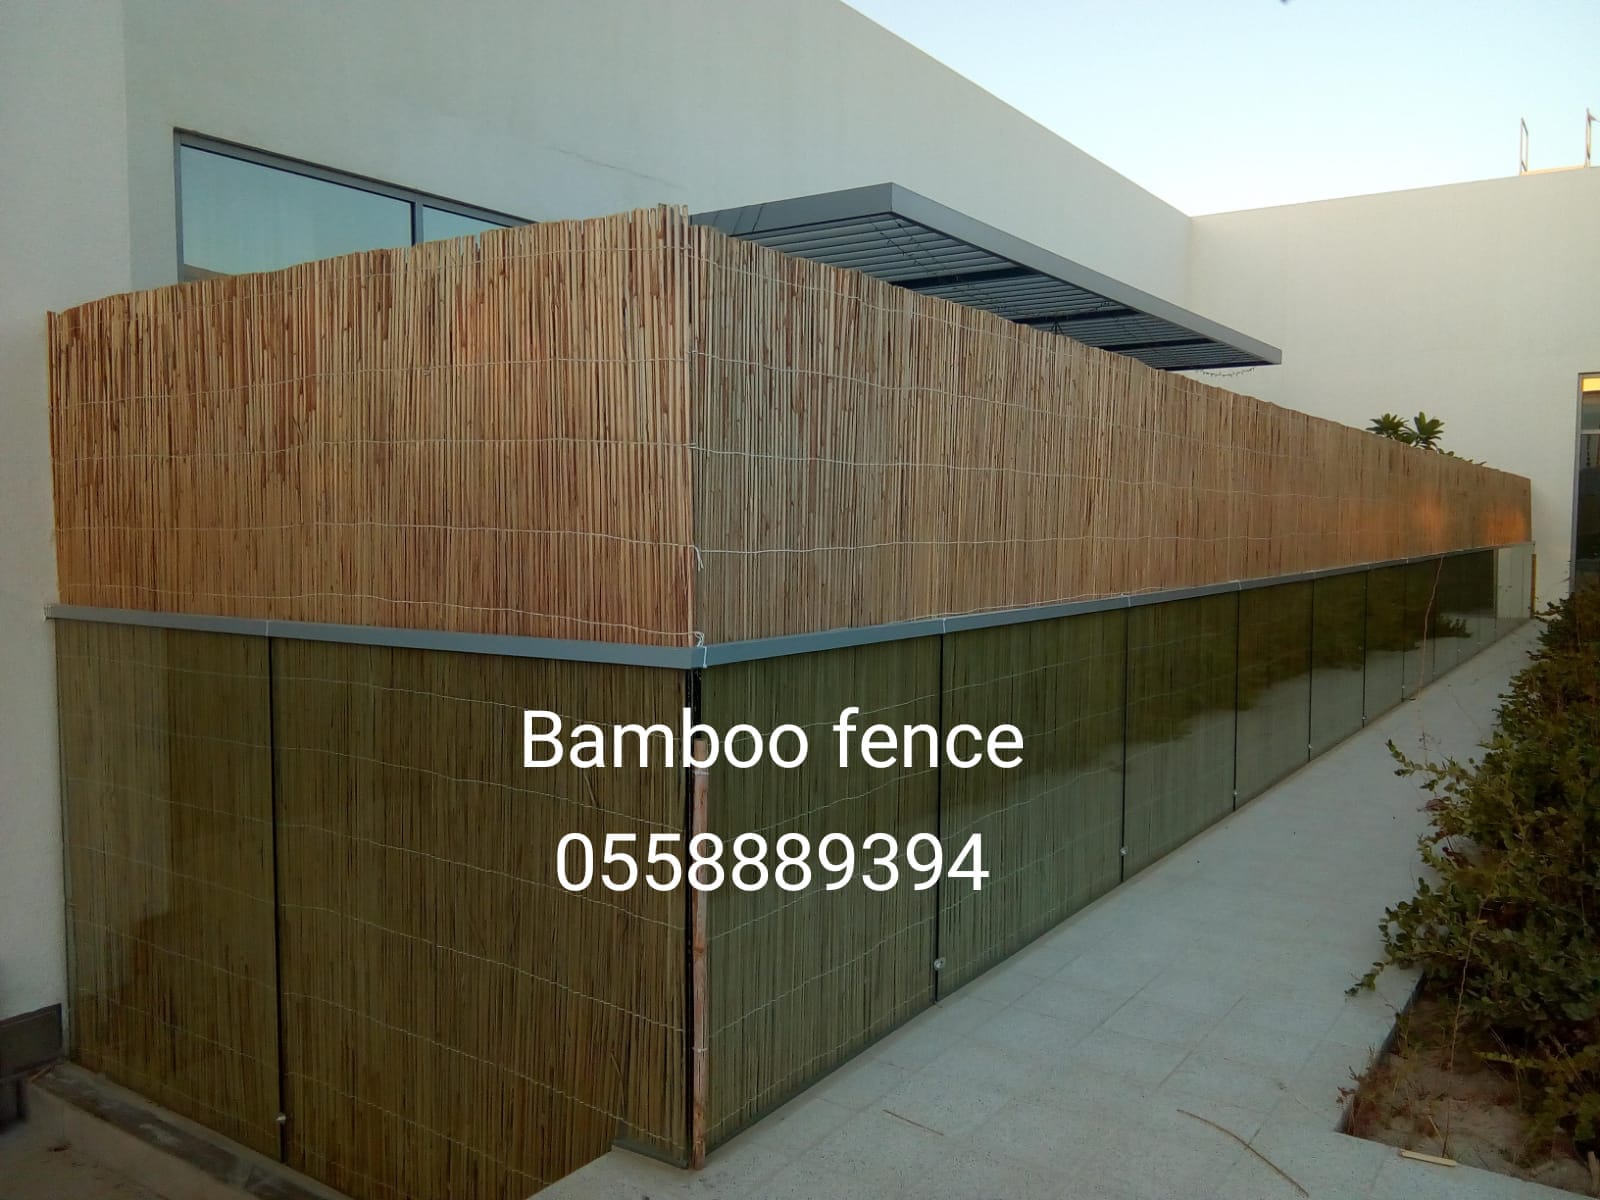 Glass bamboo fence.jpeg